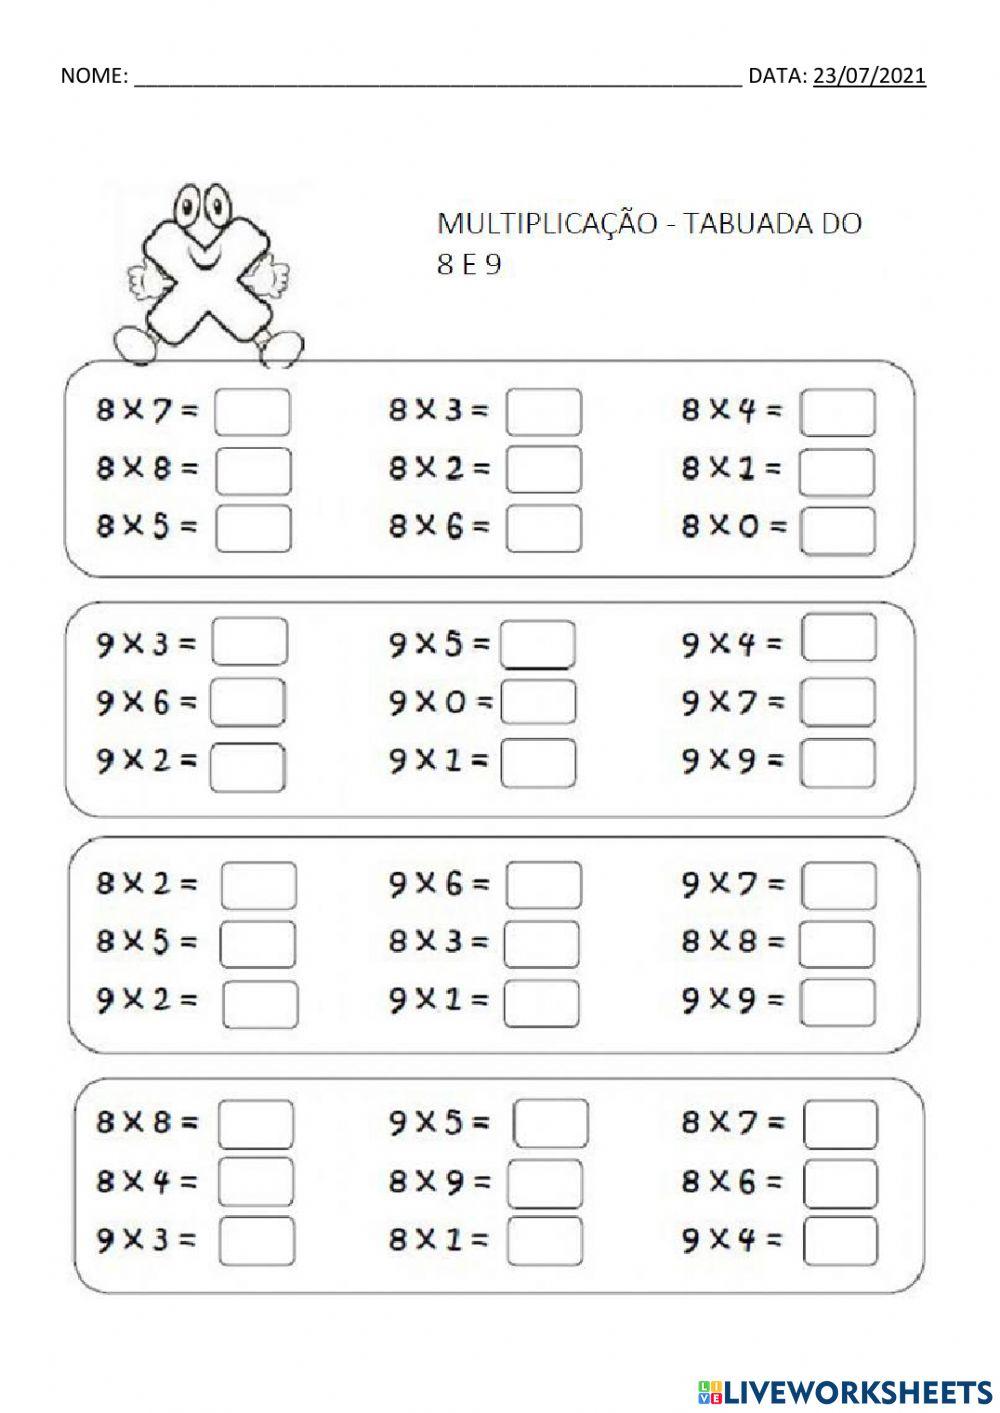 Multiplicação tabuada do 8 e 9